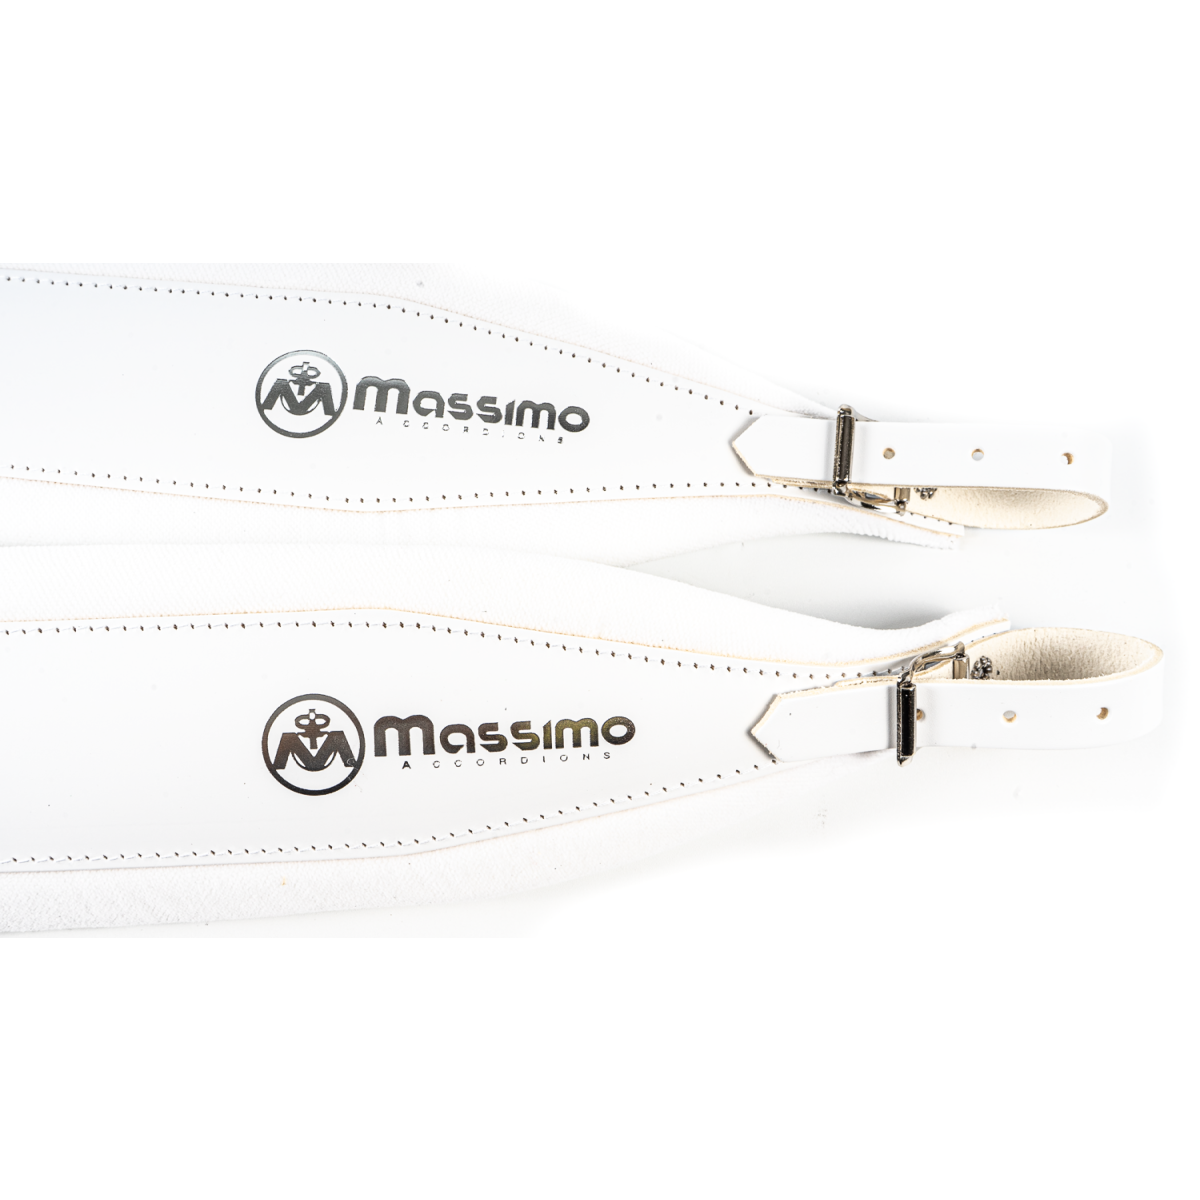 Massimo Straps White